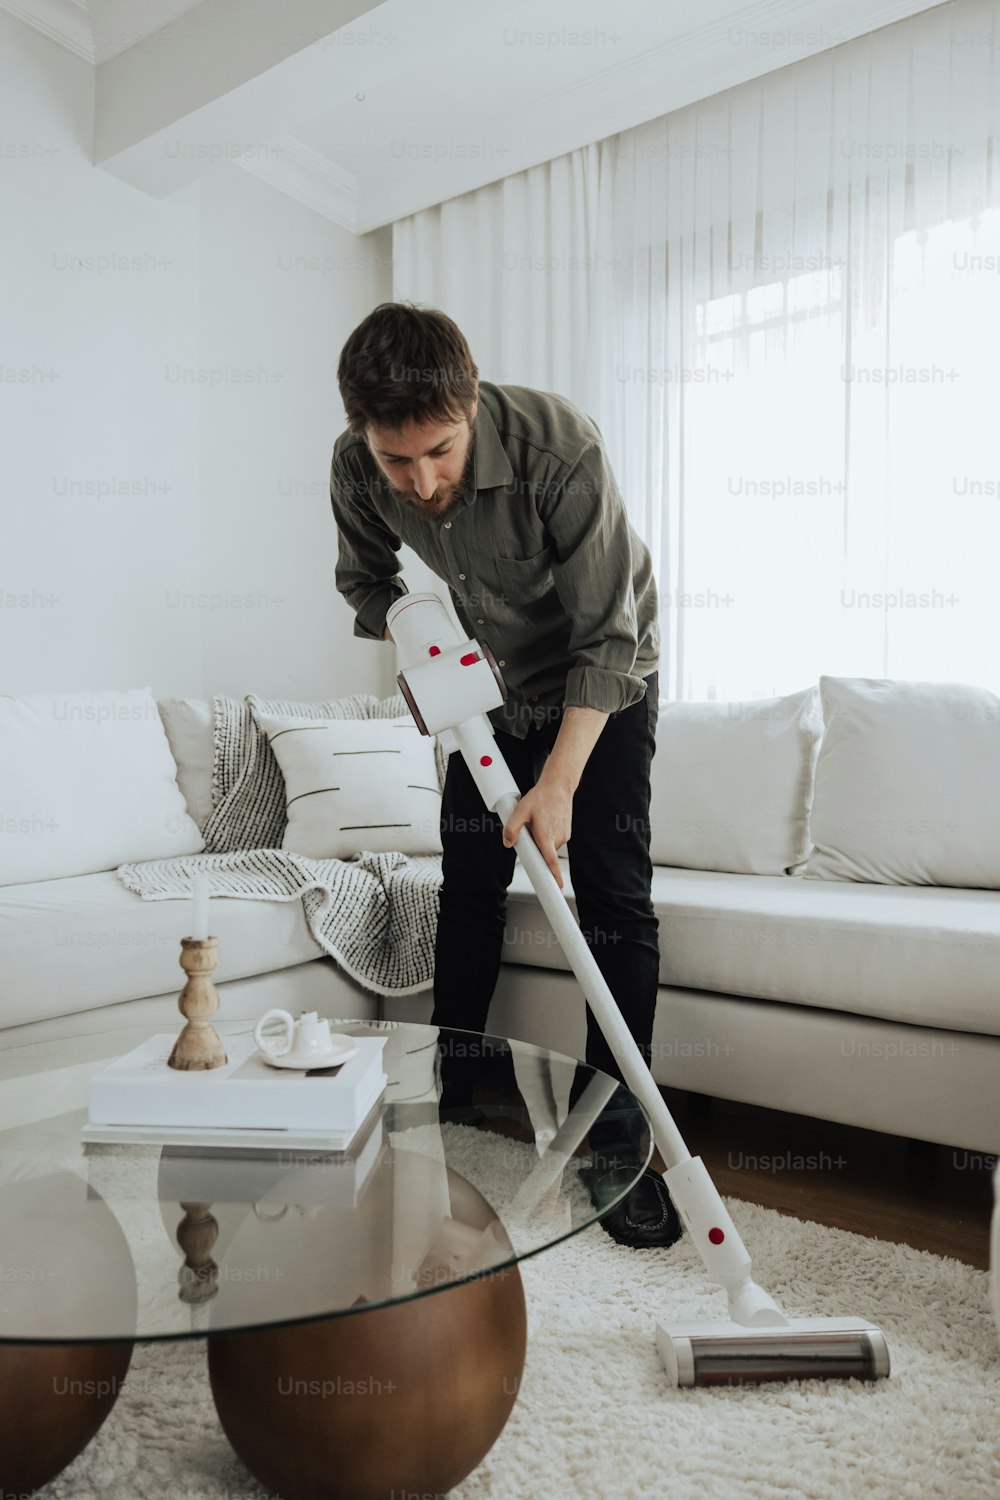 Un uomo sta pulendo un soggiorno con una scopa